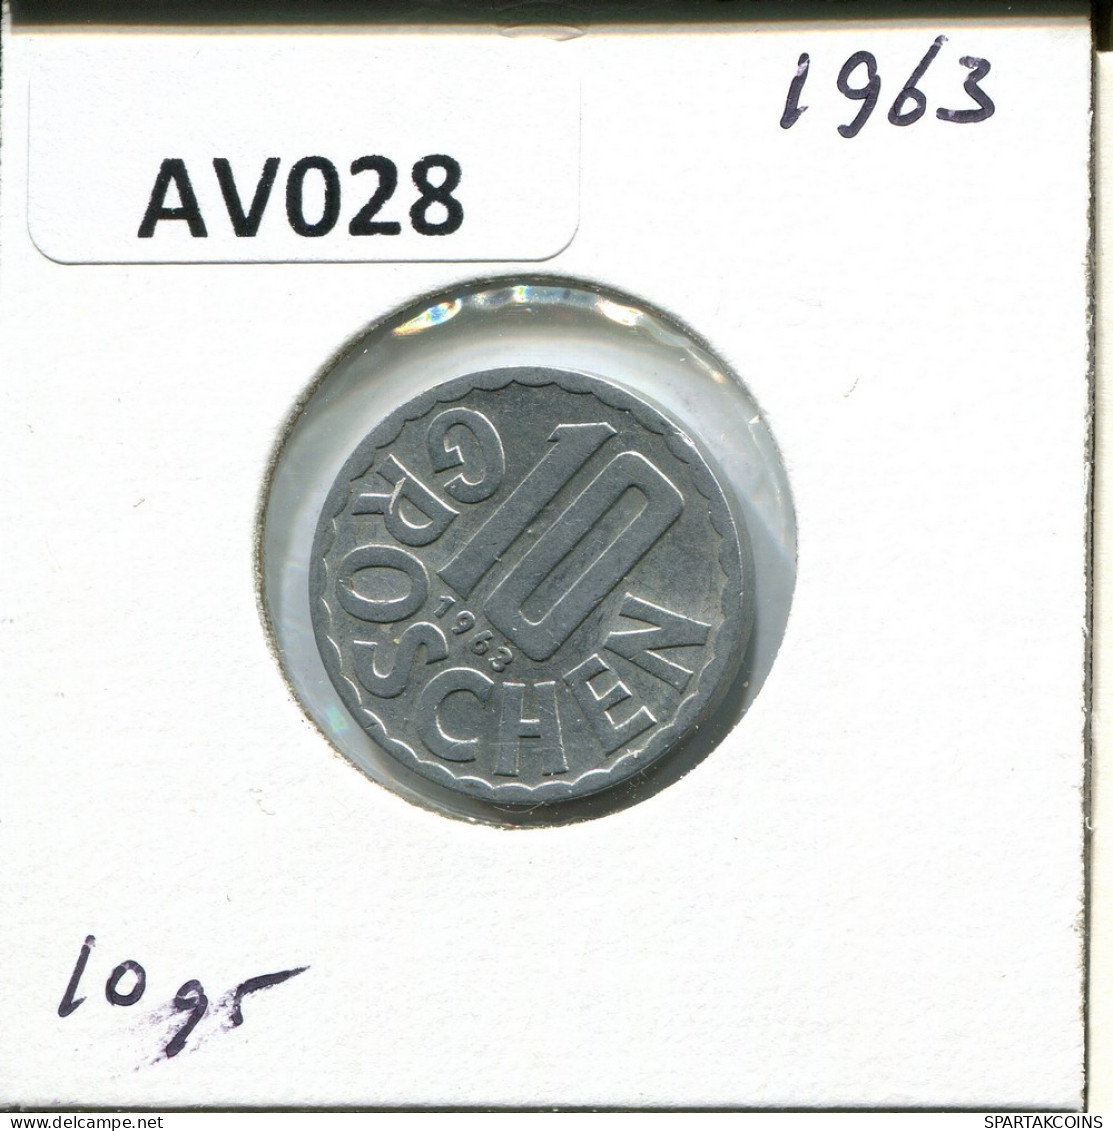 10 GROSCHEN 1962 ÖSTERREICH AUSTRIA Münze #AV028.D.A - Austria